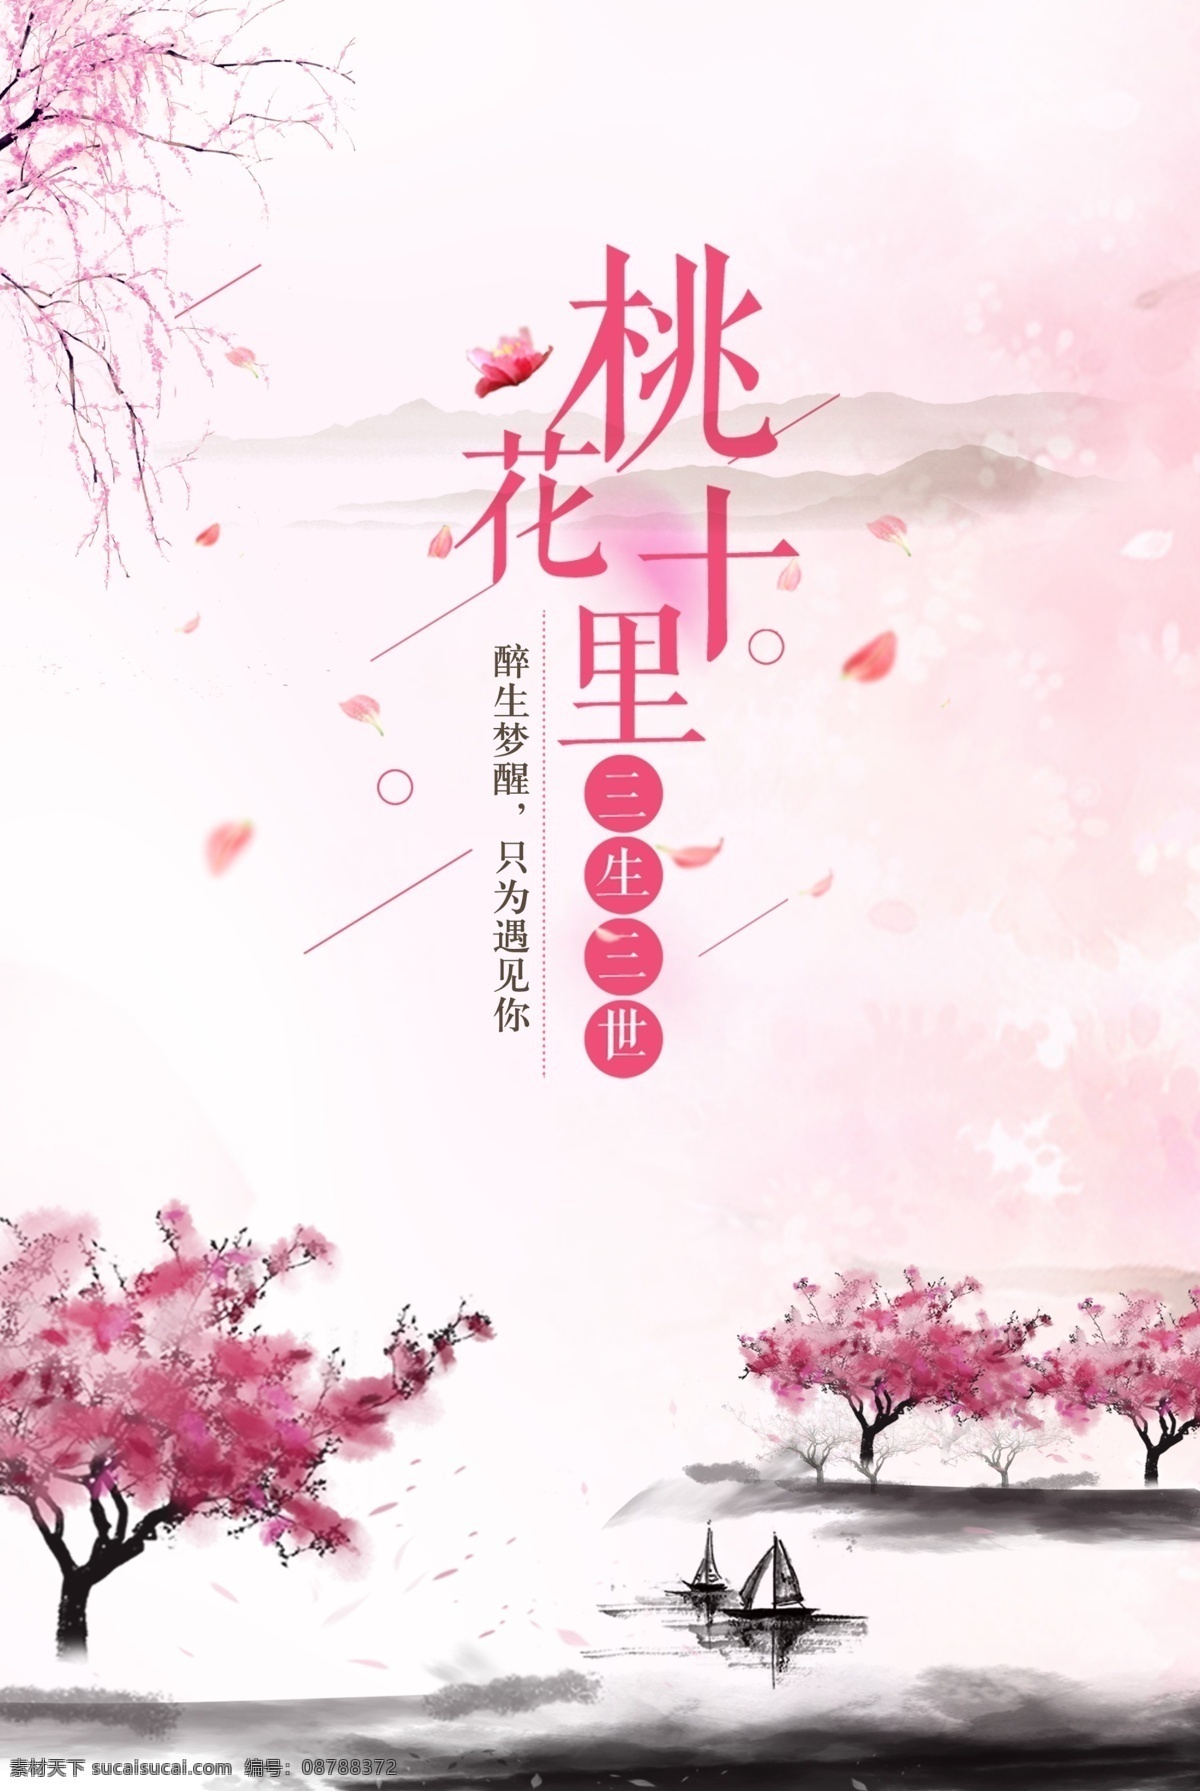 唯美 十里 桃花 展板 插画 创意 海报 商务 手绘 易拉宝 中国风